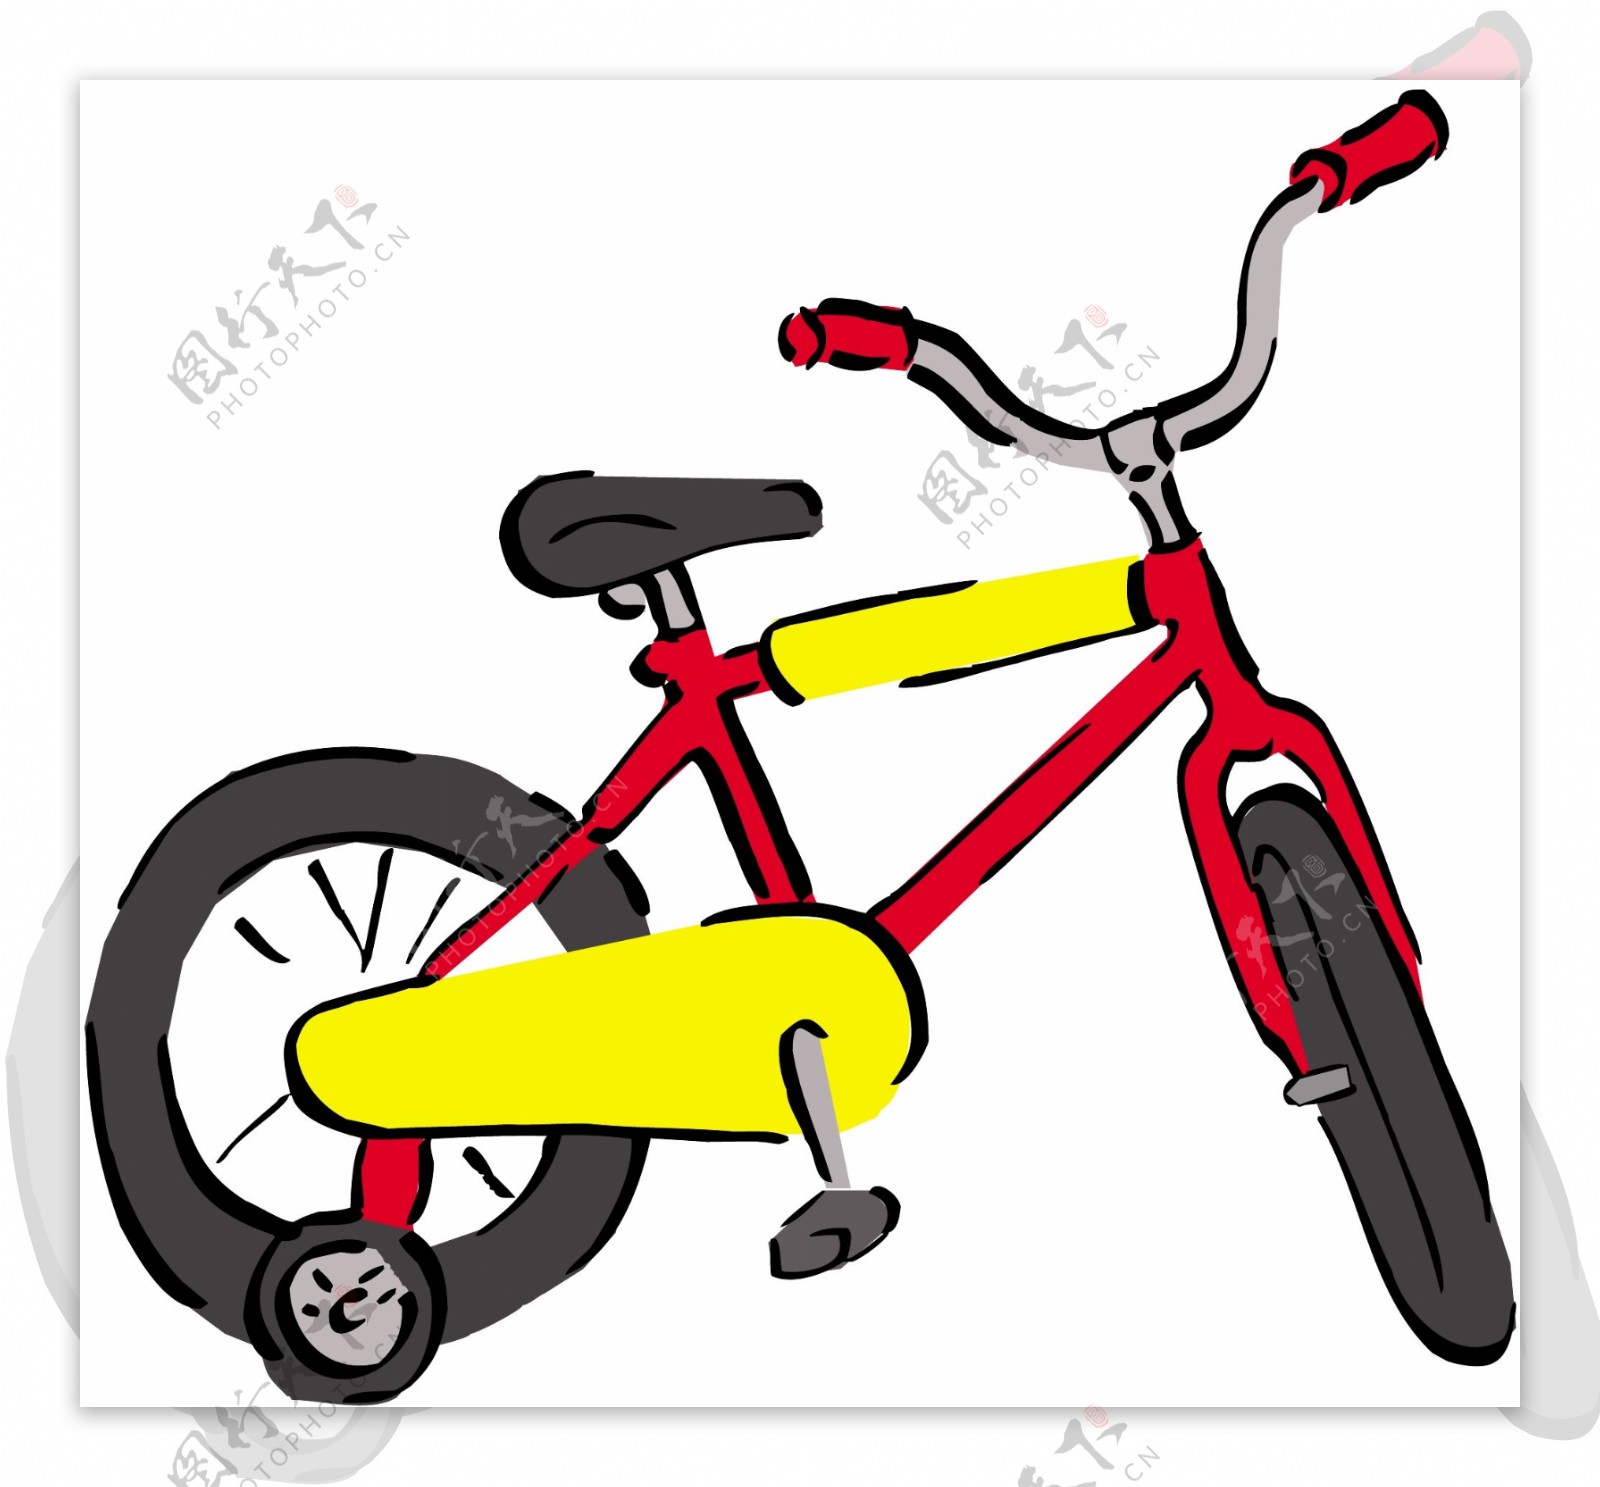 自行车交通工具矢量素材EPS格式0070